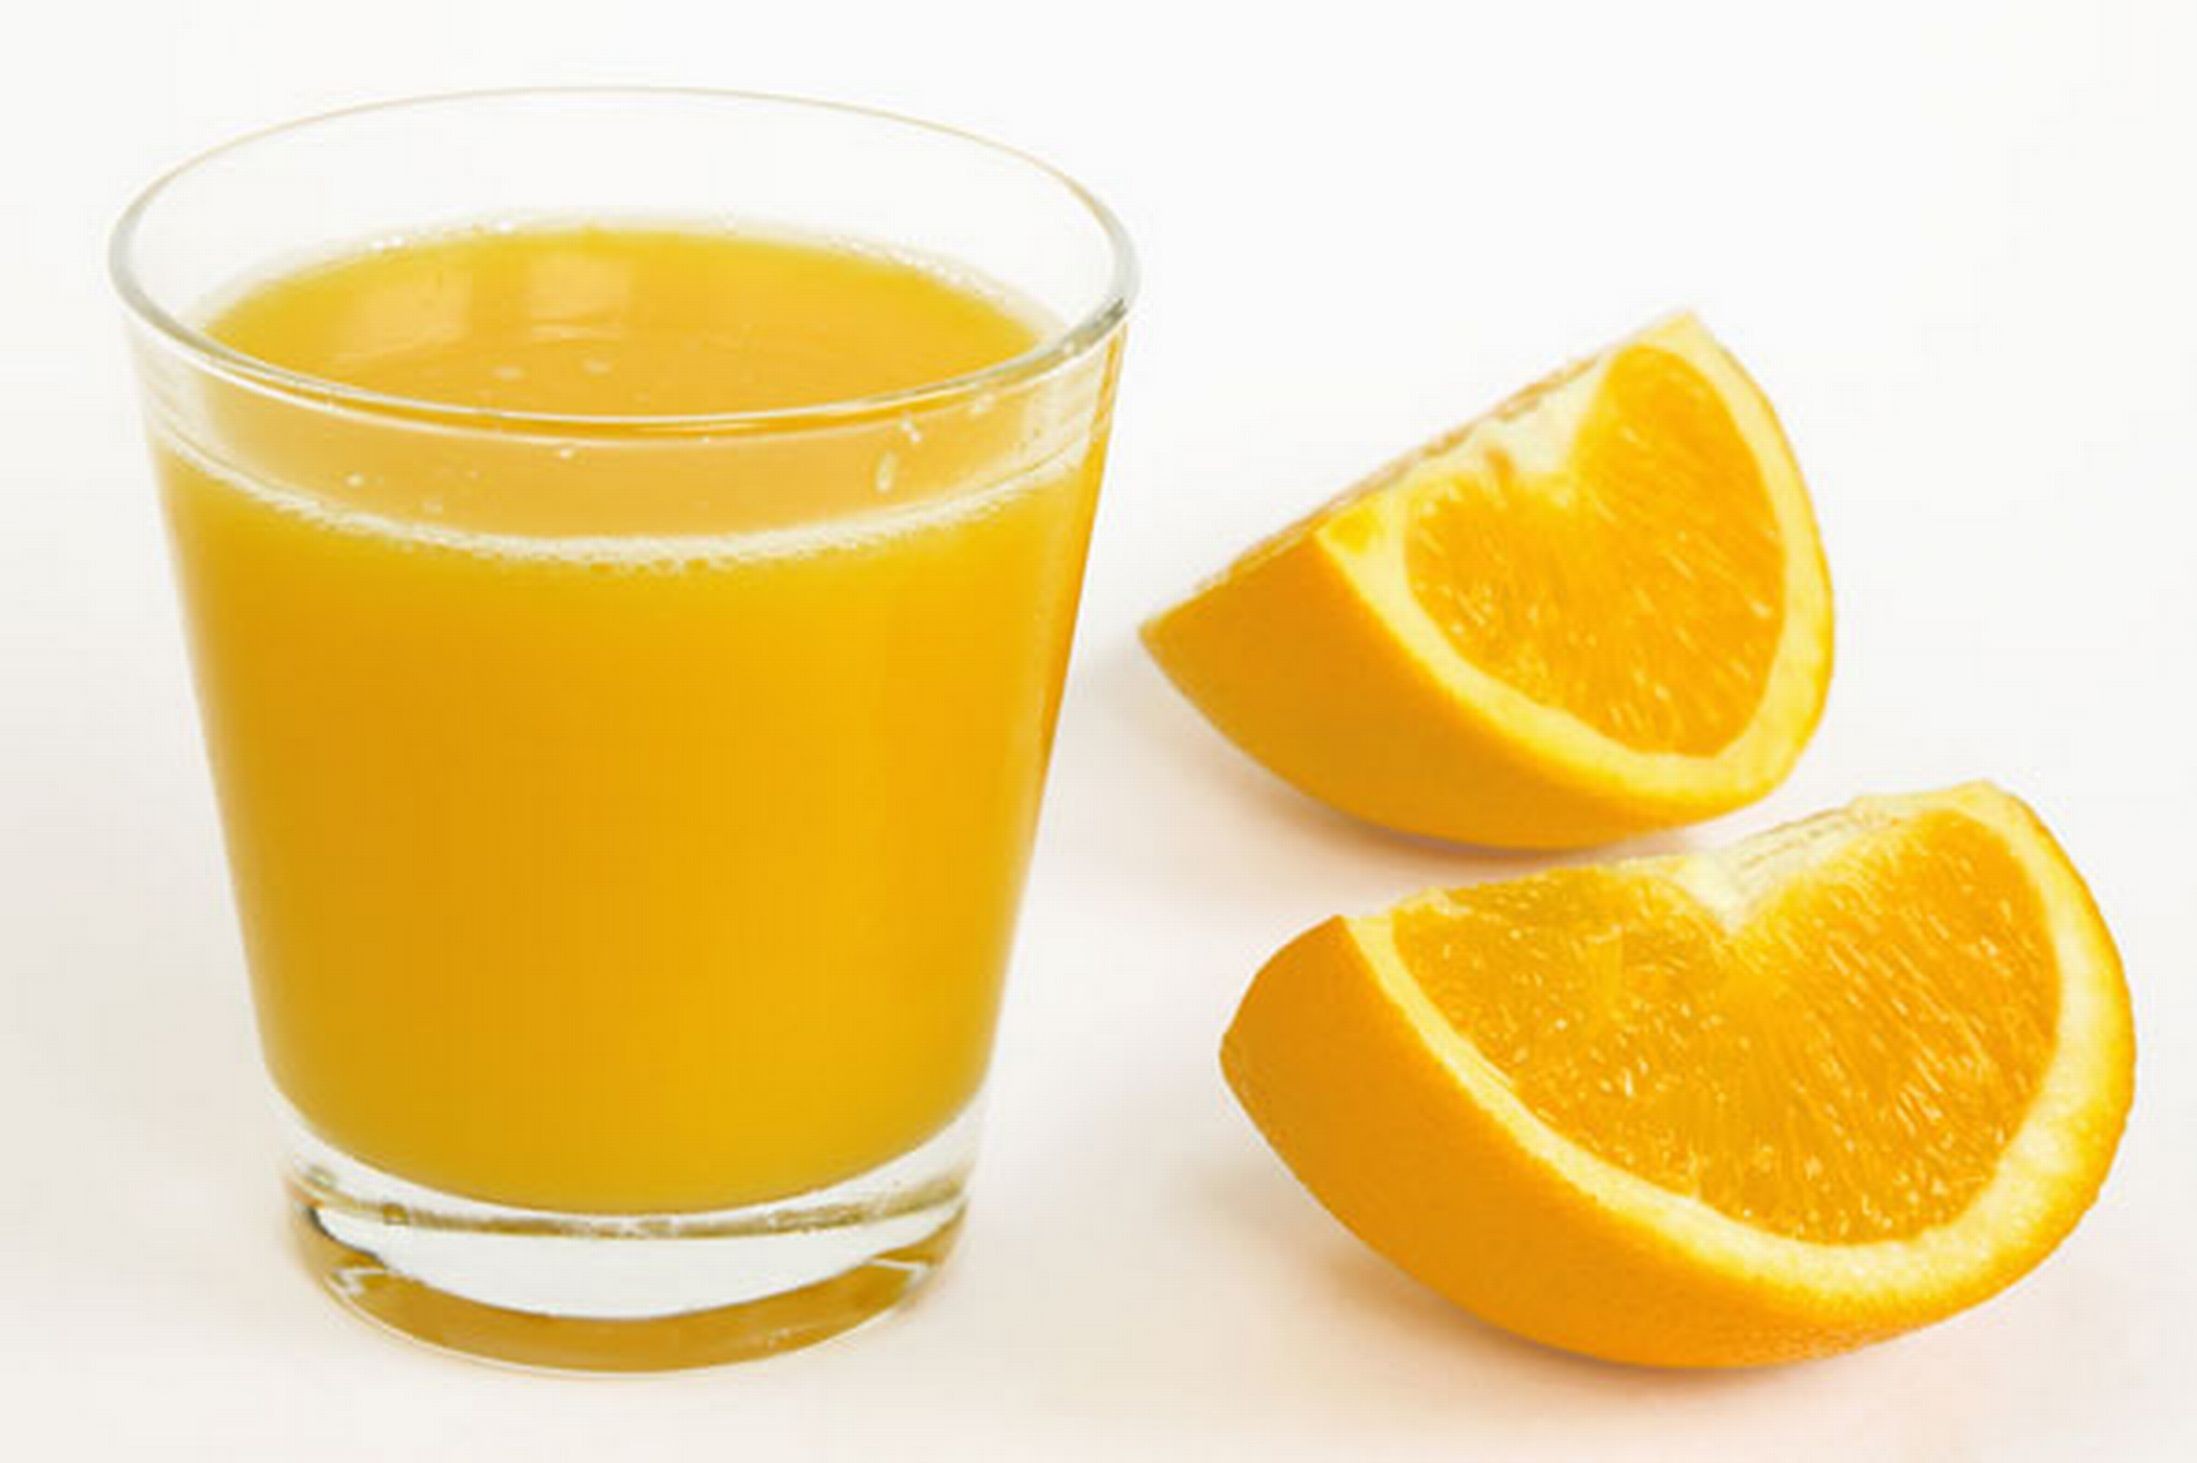 Alergia al zumo de naranja